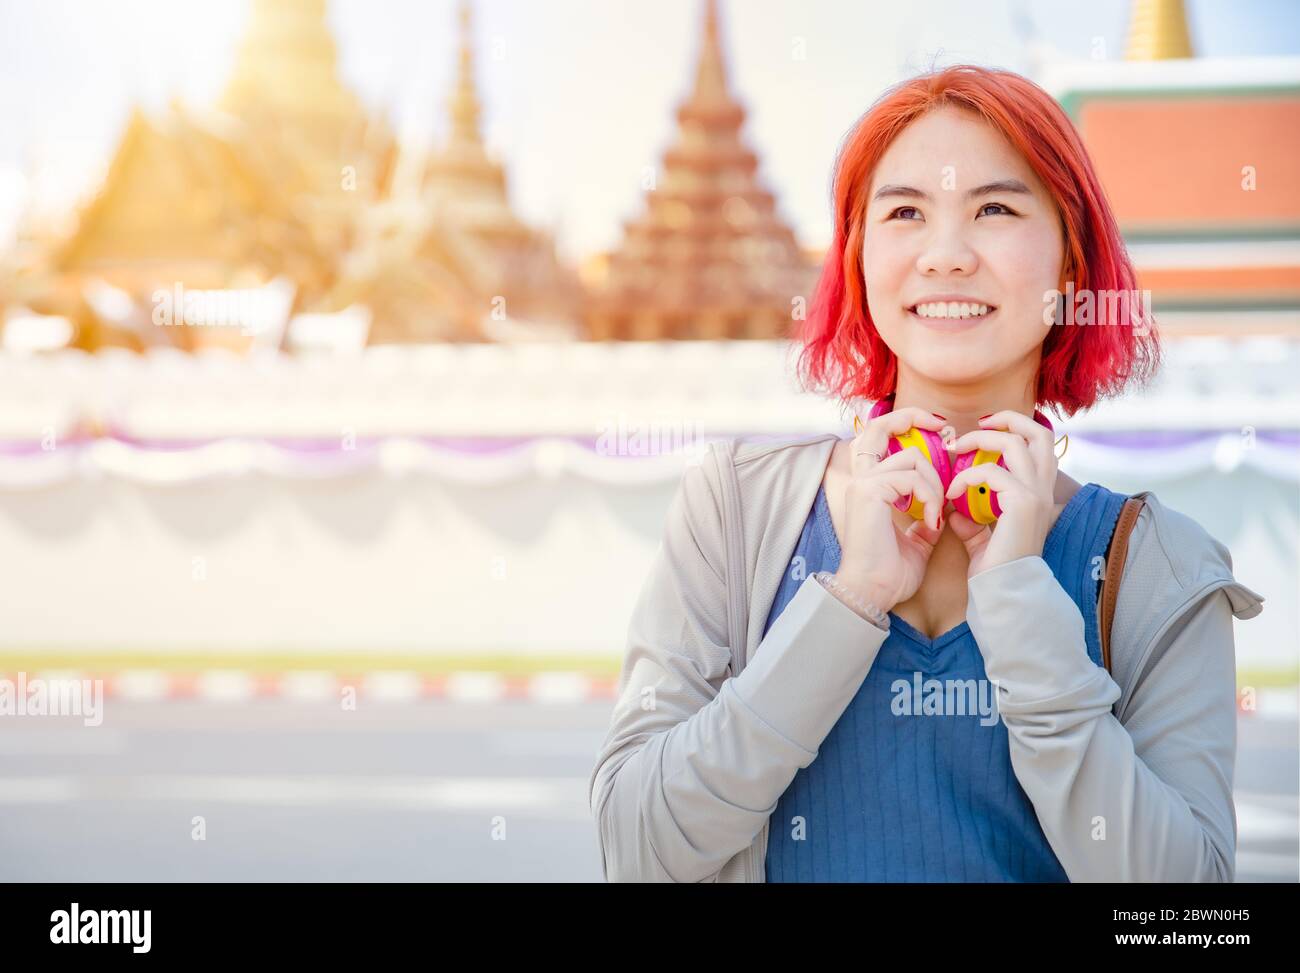 Porträt Thai Asian Mädchen neue Generation junge Pop teen gefärbt roten Haar Farbe Schatten lächelnd mit Thailand Tempel Hintergrund. Stockfoto